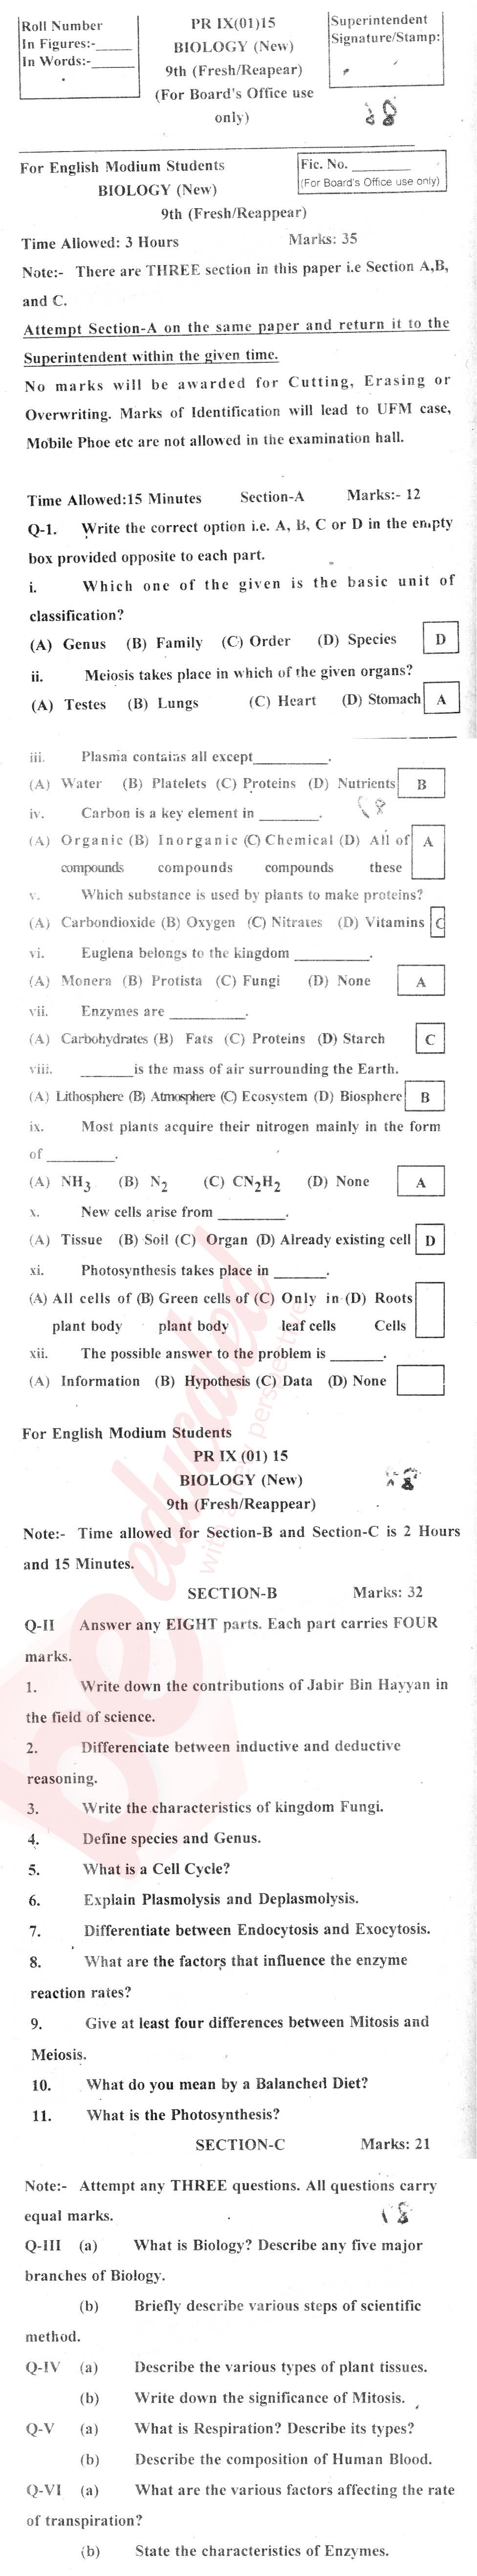 Biology 9th English Medium Past Paper Group 1 BISE Kohat 2015